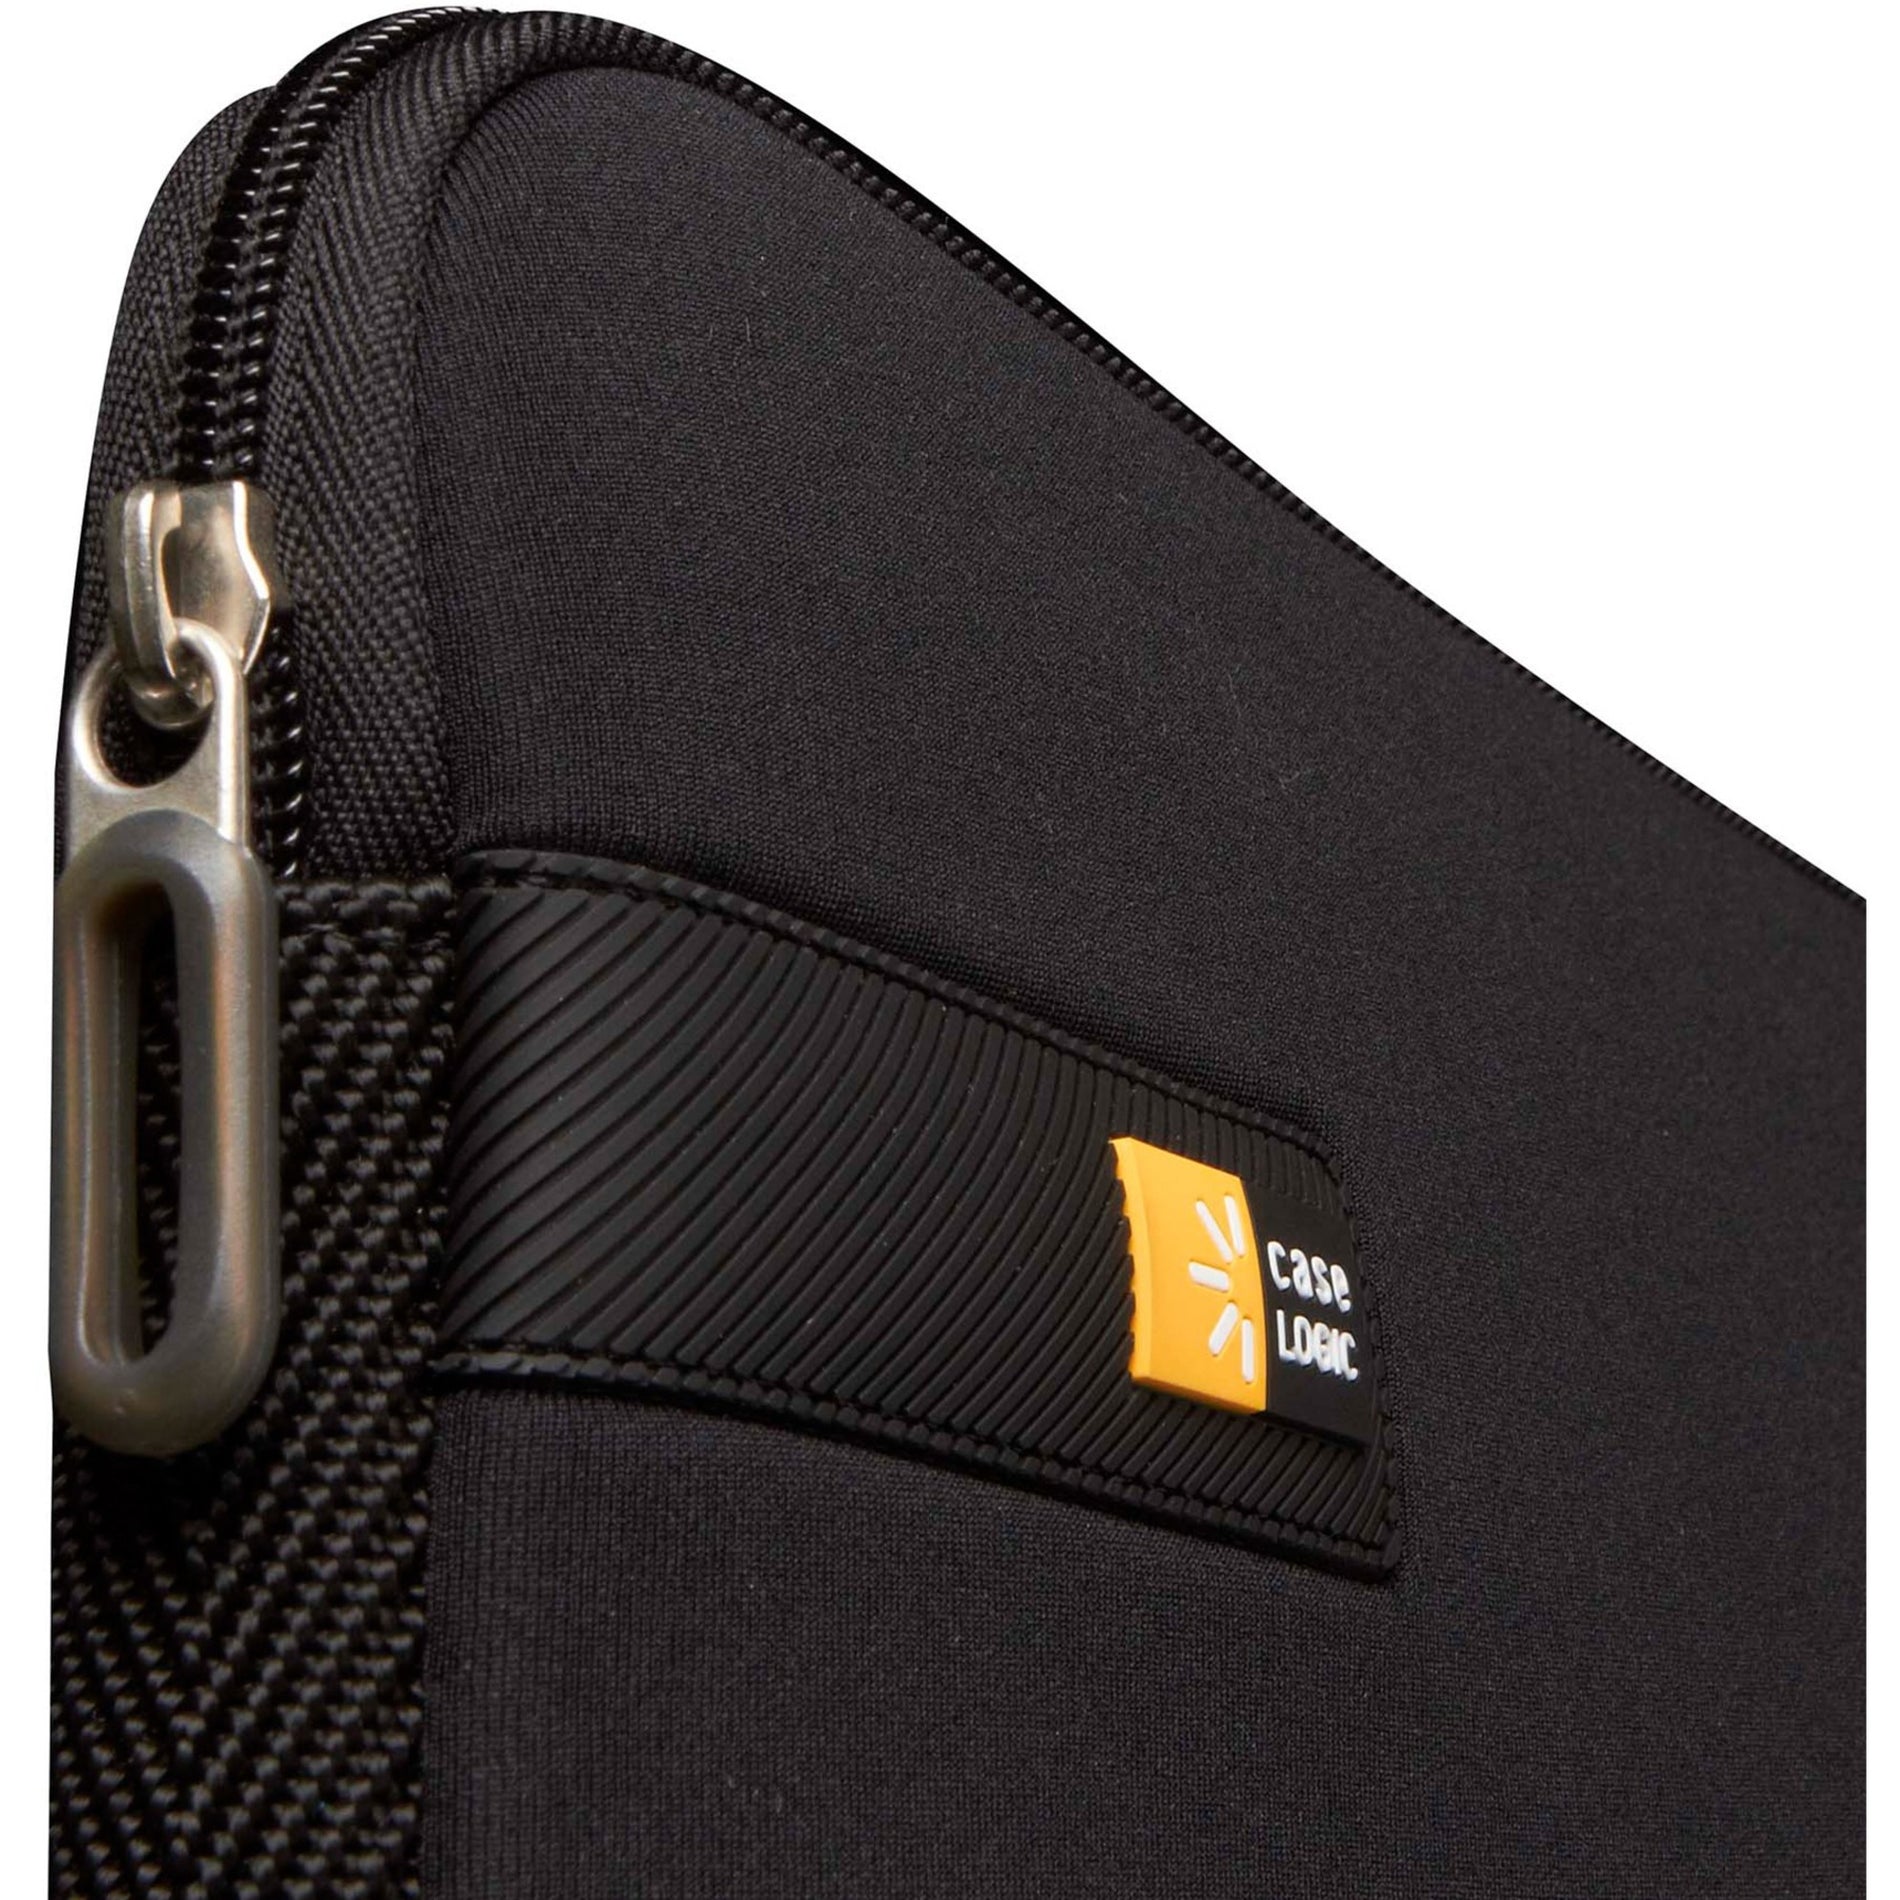 Case Logic 3201339 10-11.6" Chromebooks&trade;/Ultrabooks&trade; Sleeve, Carrying Case for Ultrabook, Chromebook